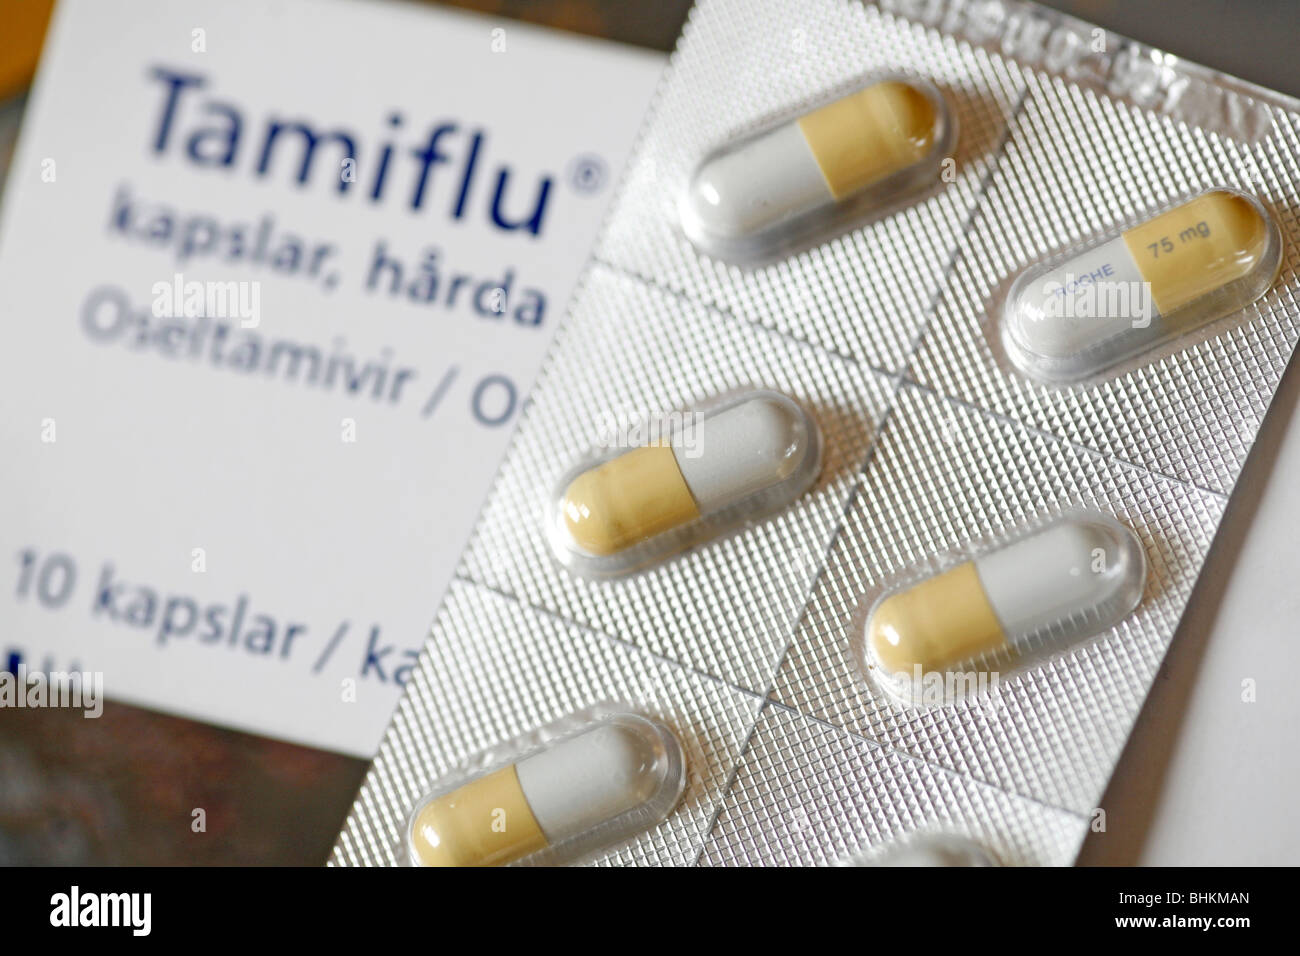 Tamiflu (Oseltamivir) antivirale Medikamente gegen Grippe, Schweinegrippe  und Vogelgrippe Stockfotografie - Alamy